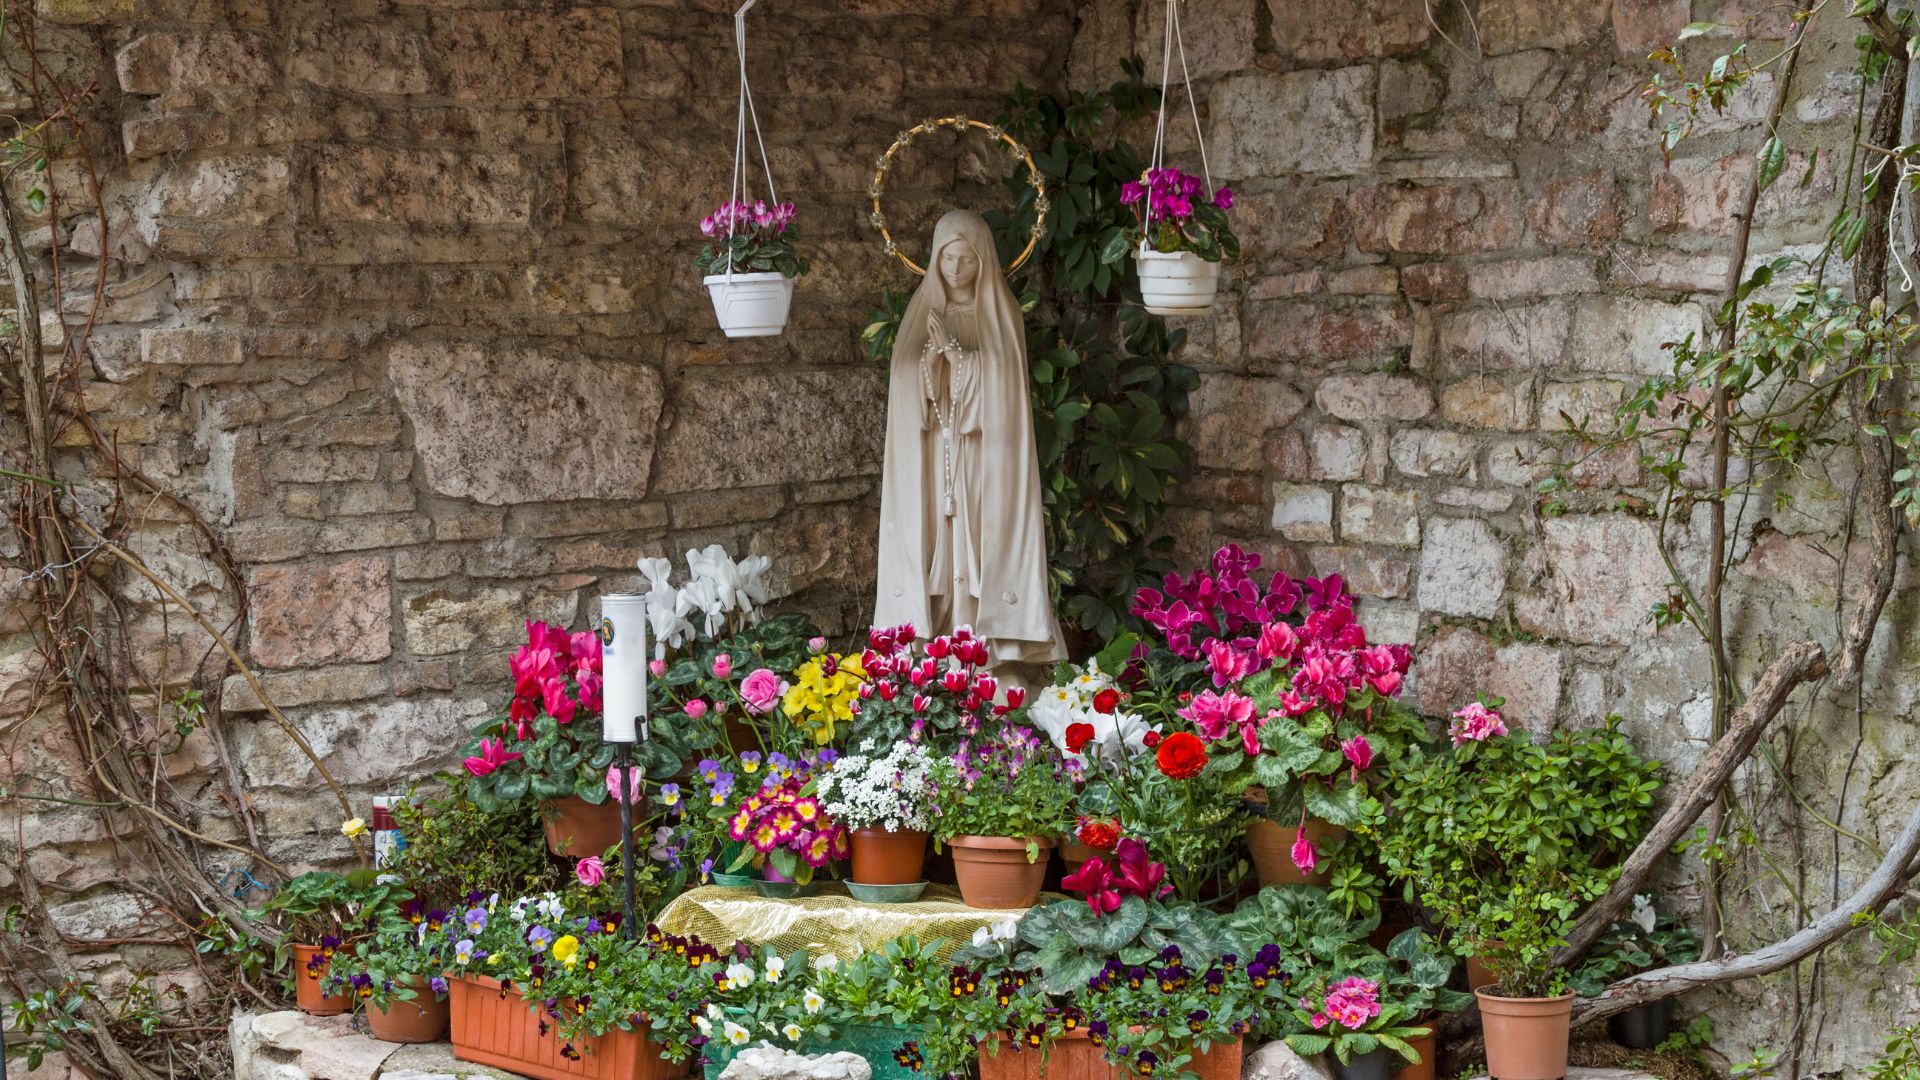 Kult maryjny bardzo często ujawnia się w przydrożnych kapliczkach pełnych kwiatów, takich jak ta na zdjęciu.